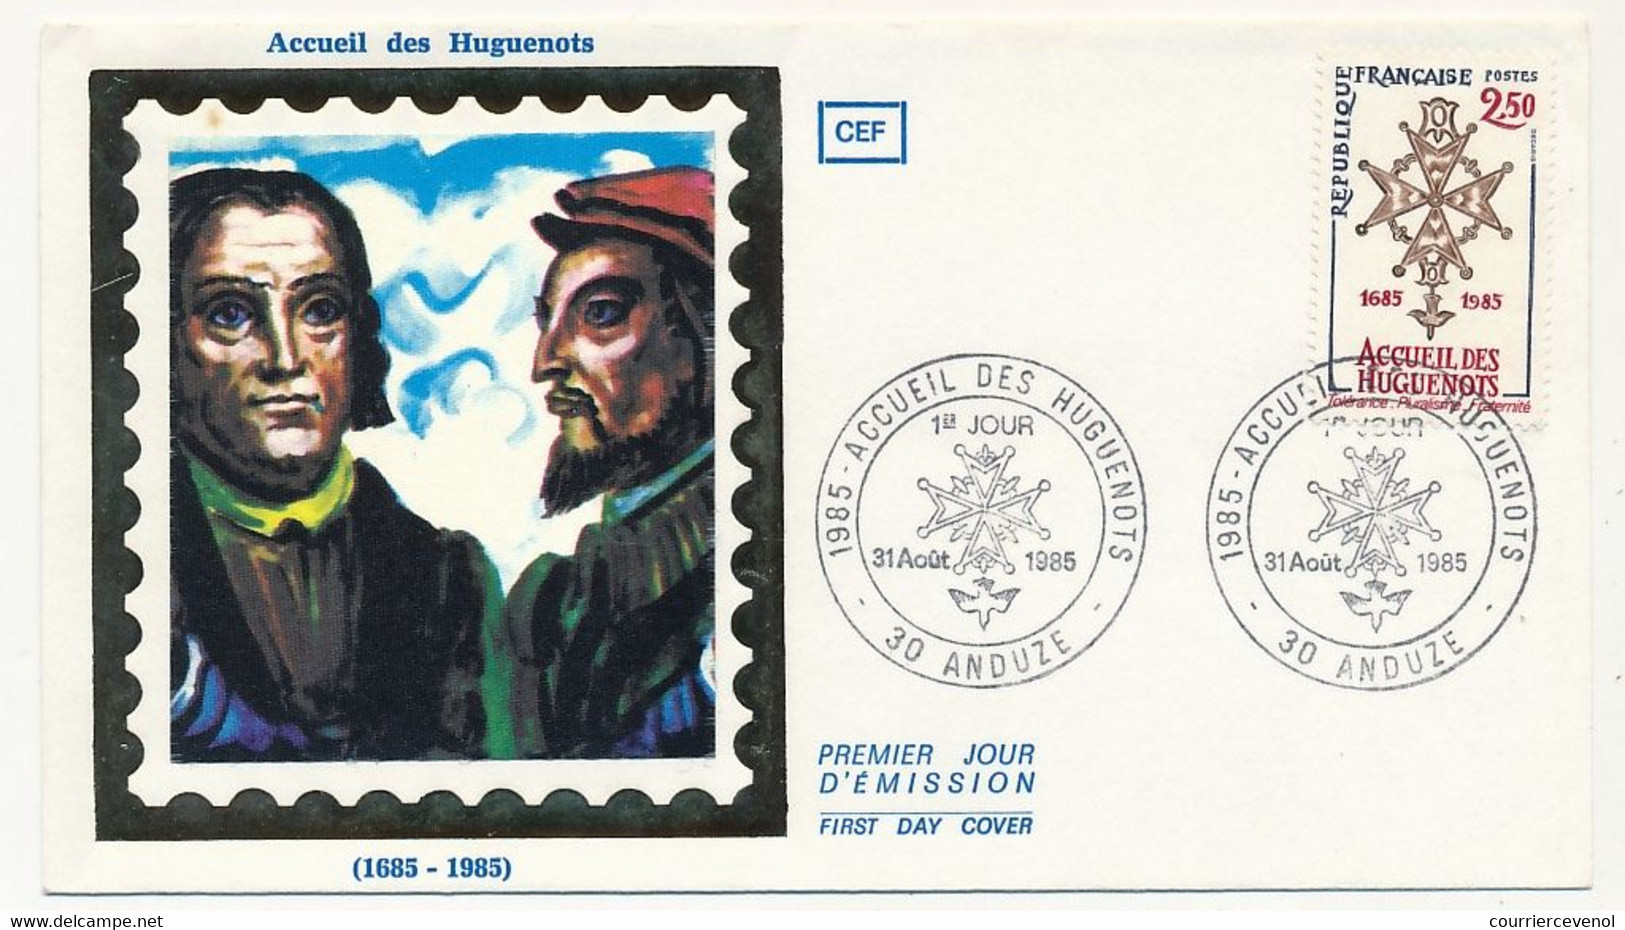 FRANCE - Enveloppe FDC Soie - 2,50 Accueil Des Huguenots - 30 ANDUZE - 31 Aout 1985 - Christentum